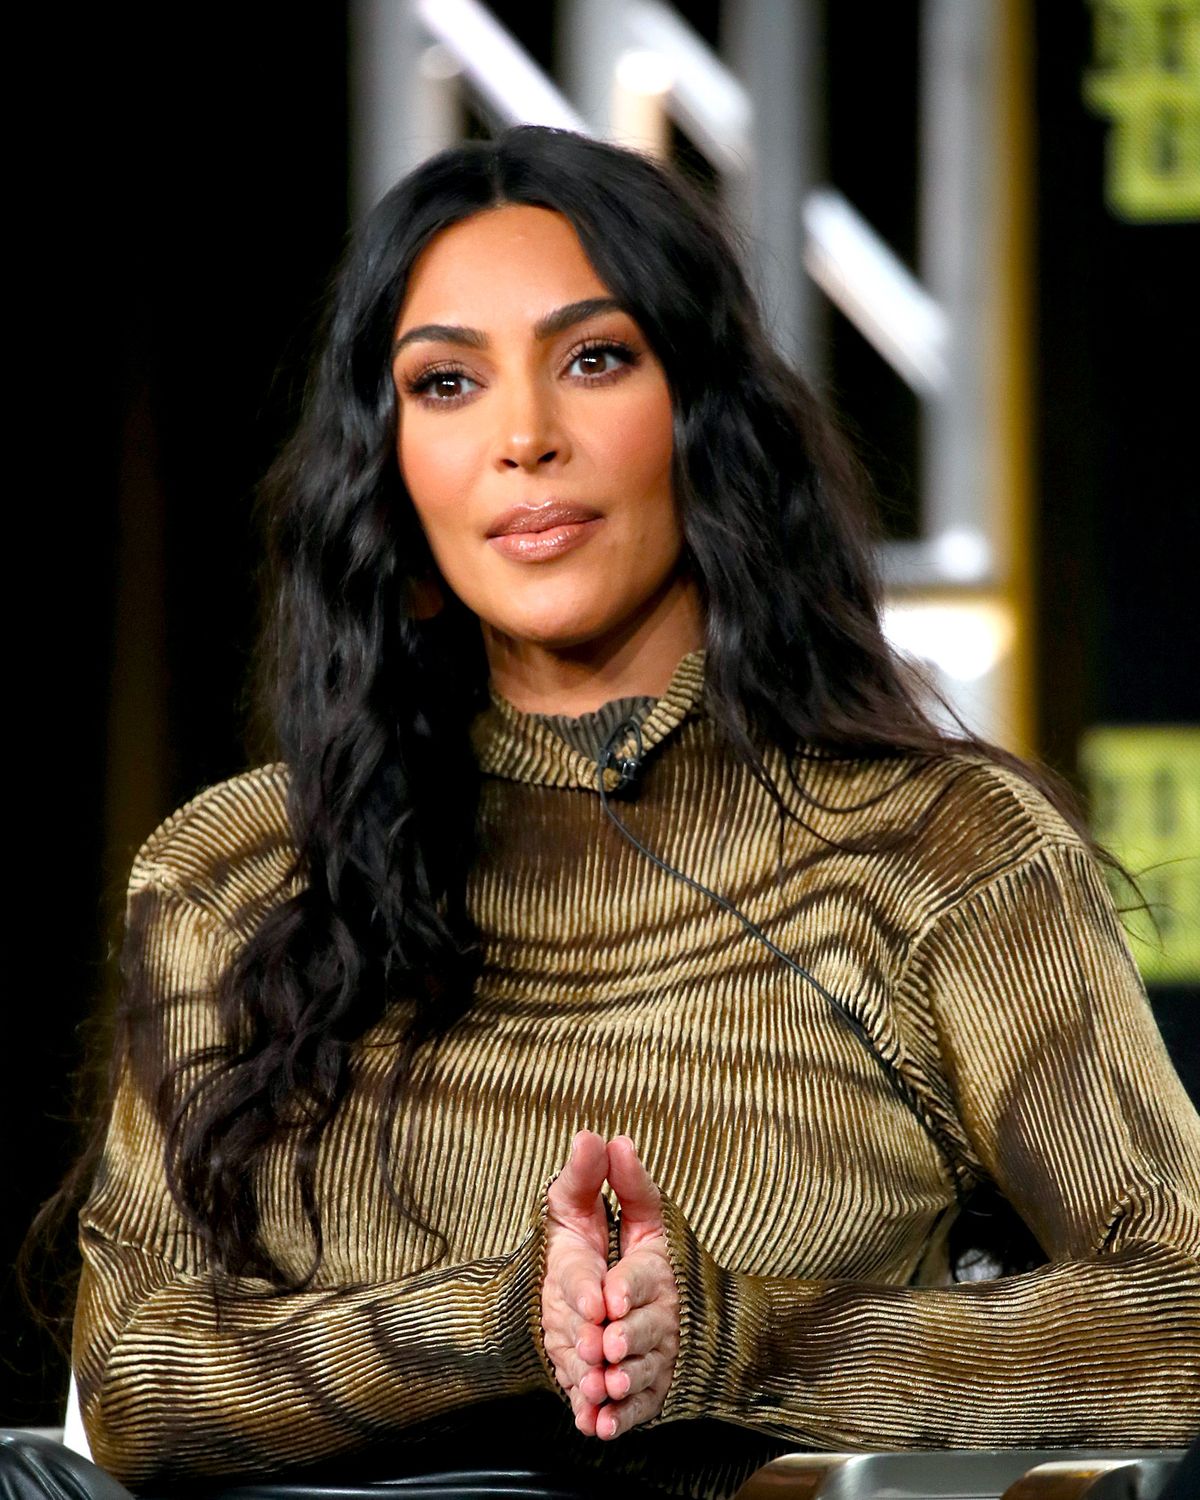 Kim Kardashian West To Release Documentary On Prison Reform